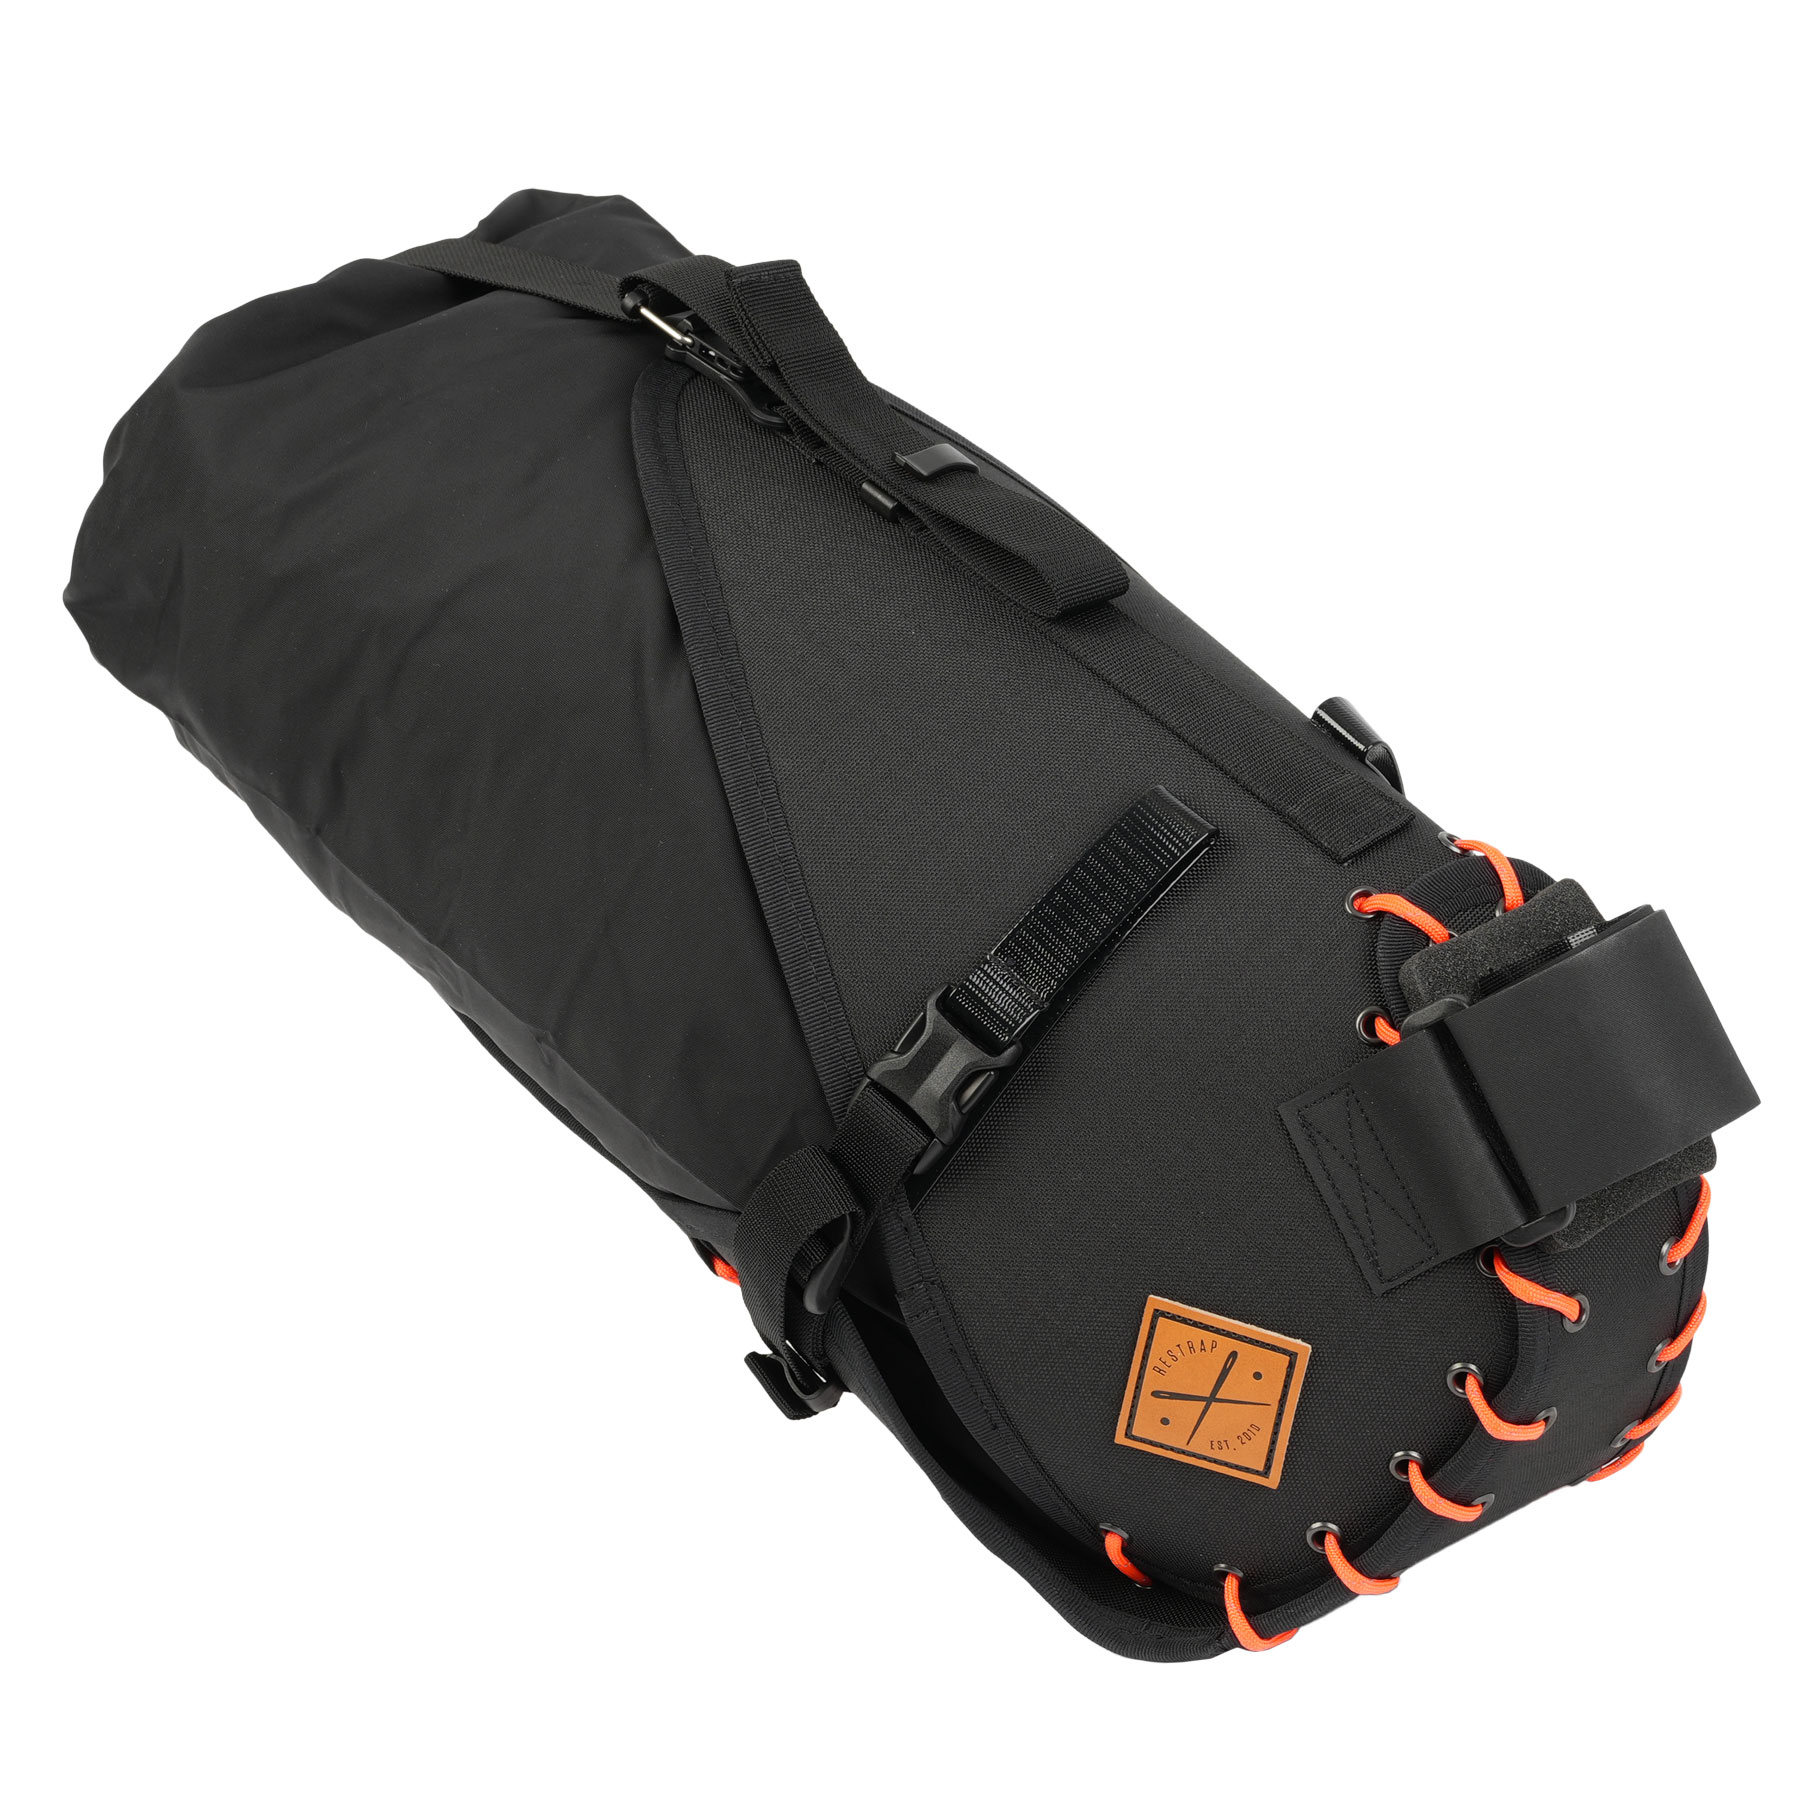 Image of Restrap Saddle Bag 14L with Drybag - black/orange